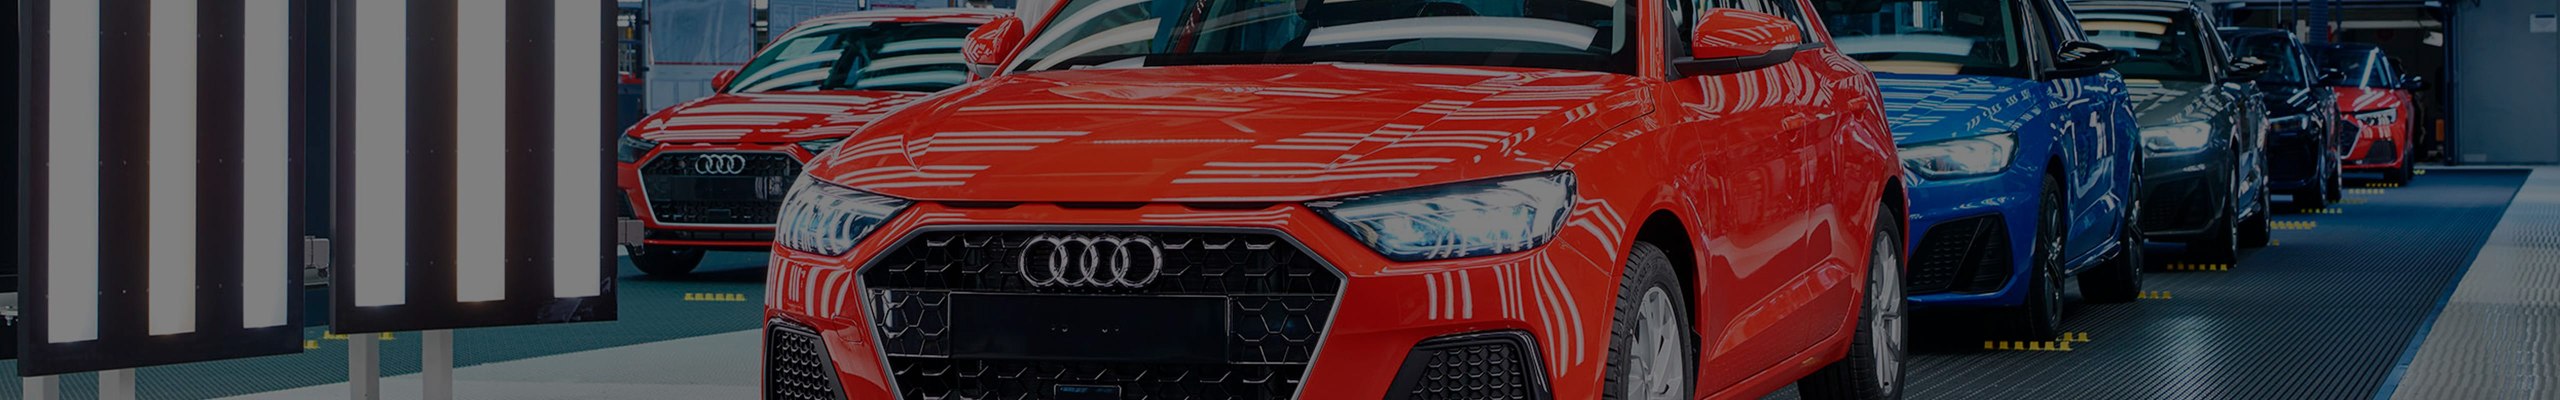 SEAT Martorell starts Audi A1 production